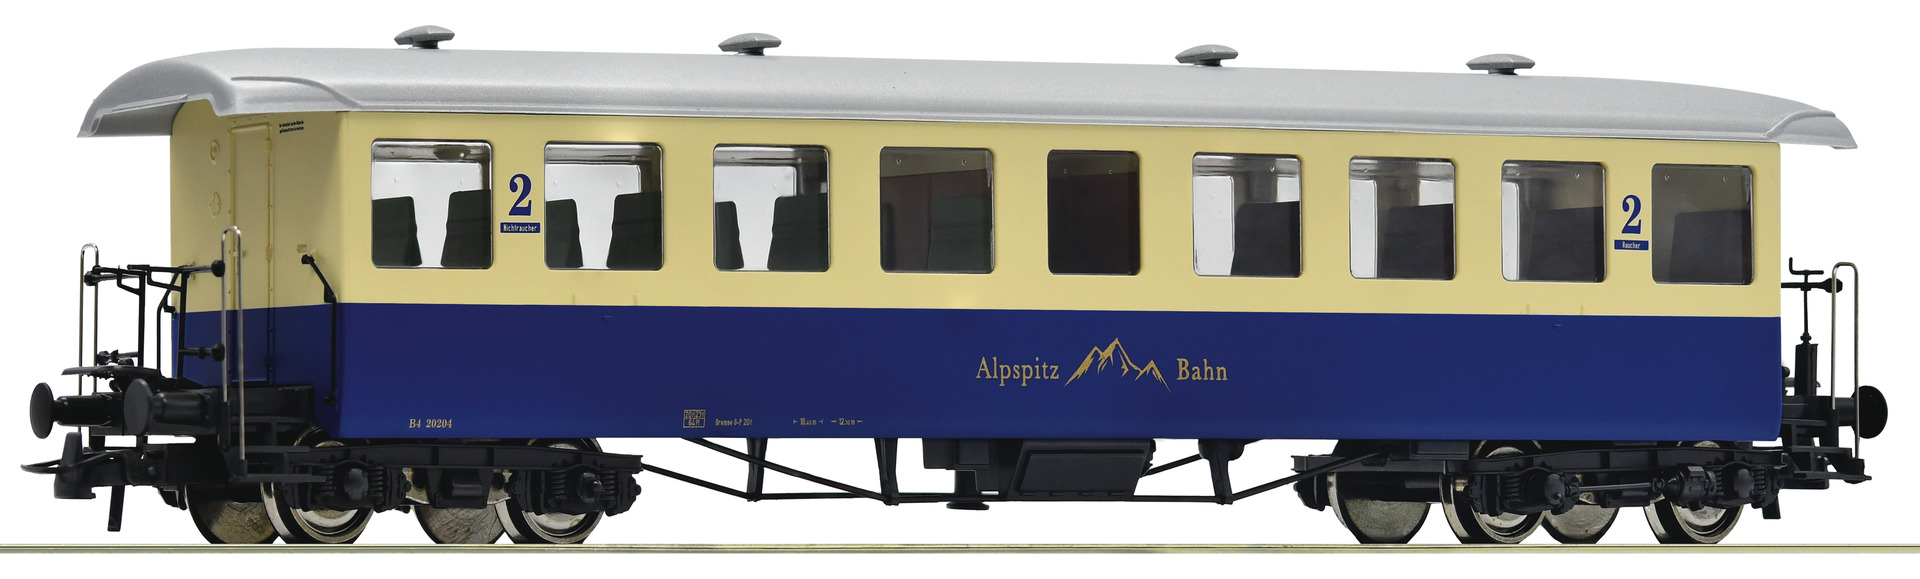 roco-74506-Zahnradbahn-Personenwagen-B4-20204-Alpspitz-Bahn